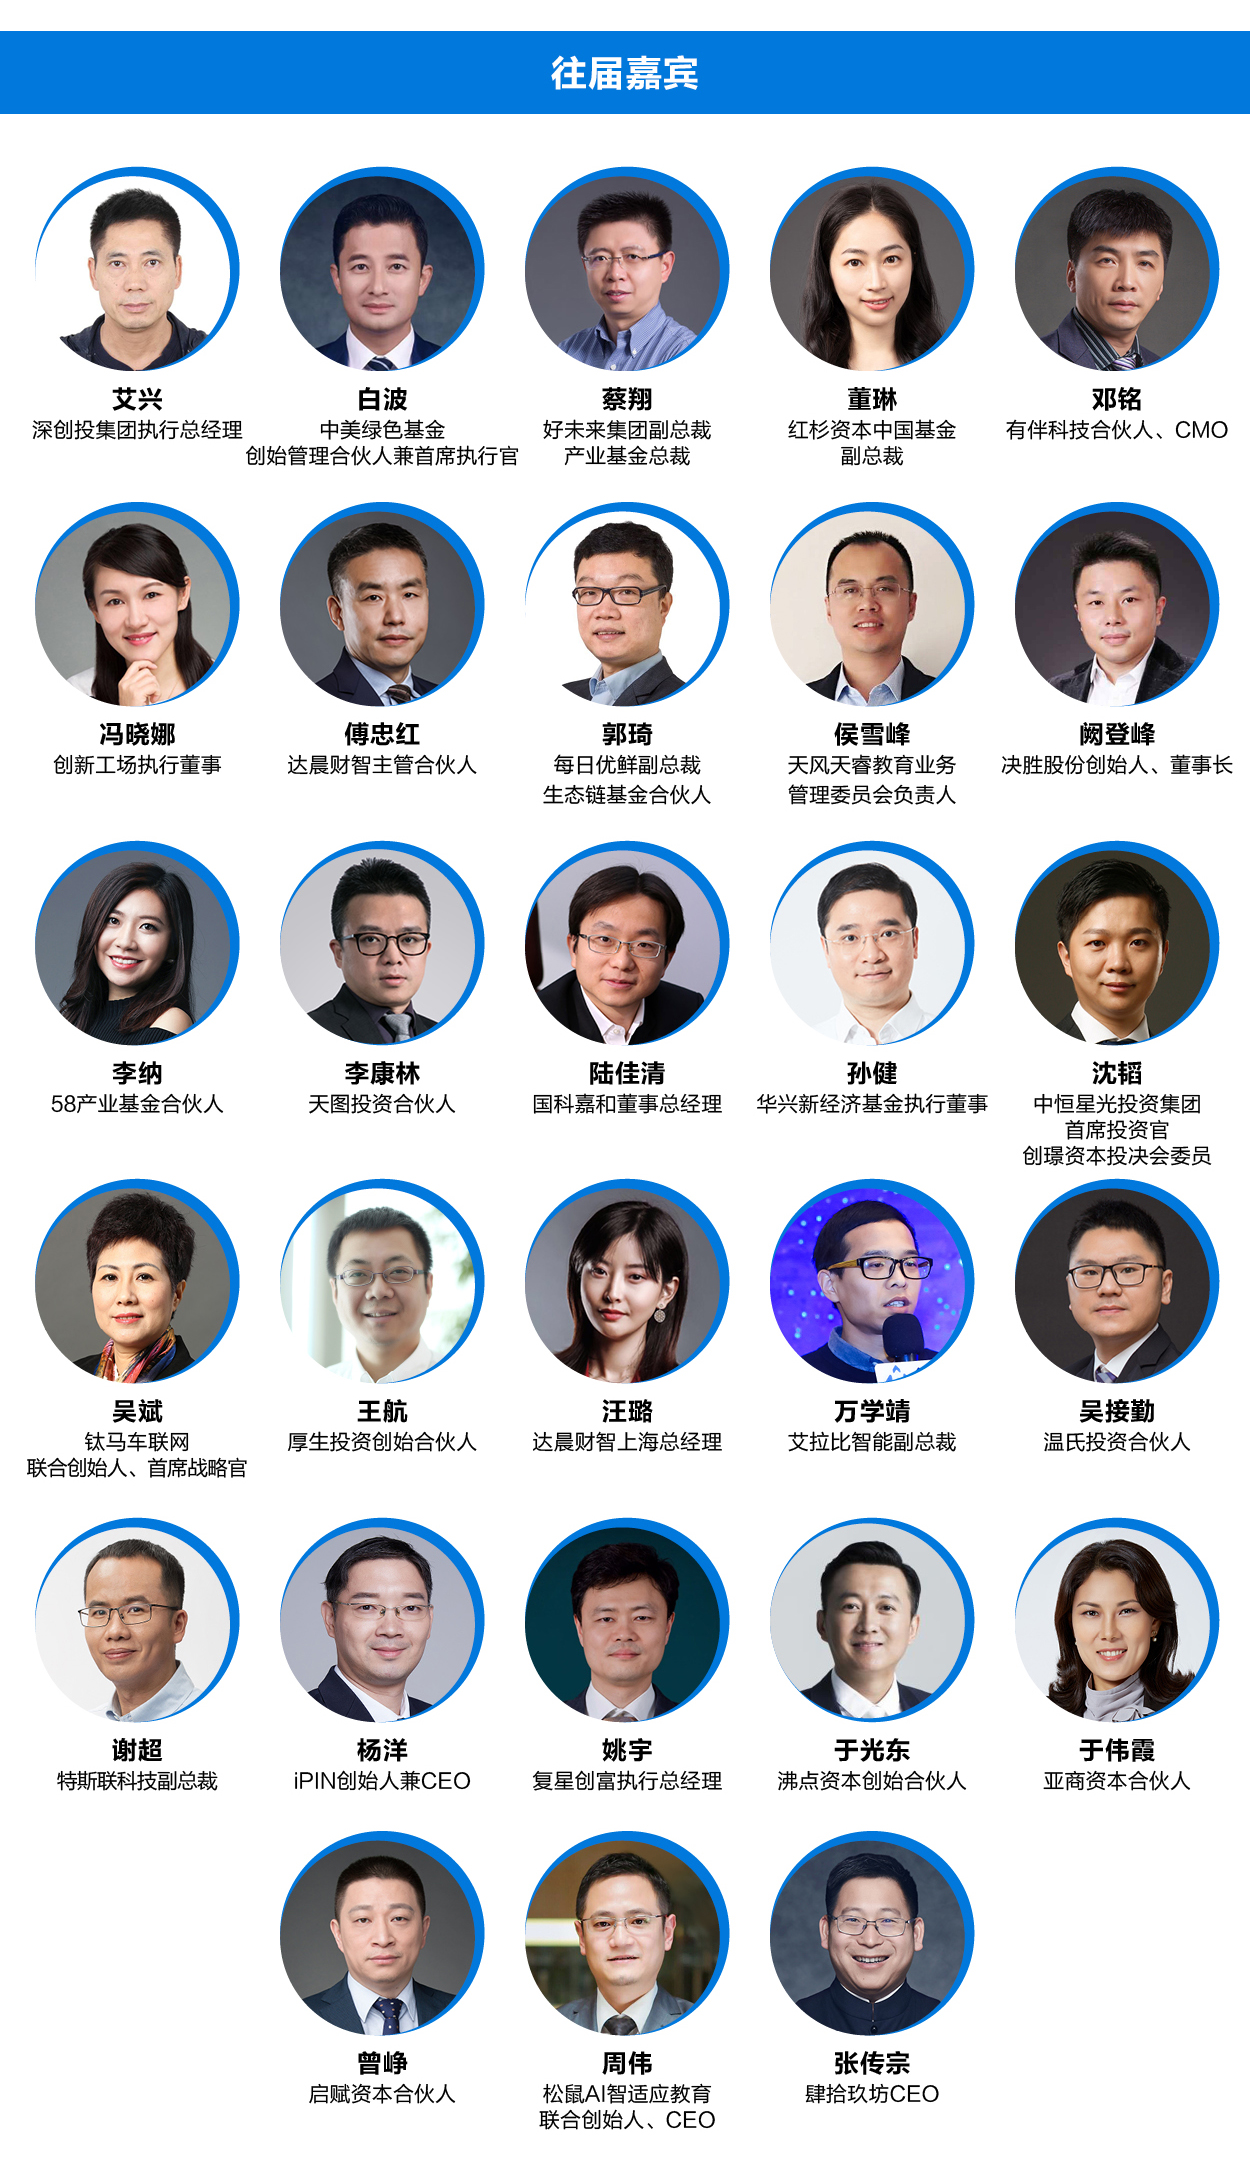 融资中国2020大消费行业投资峰会618·北京